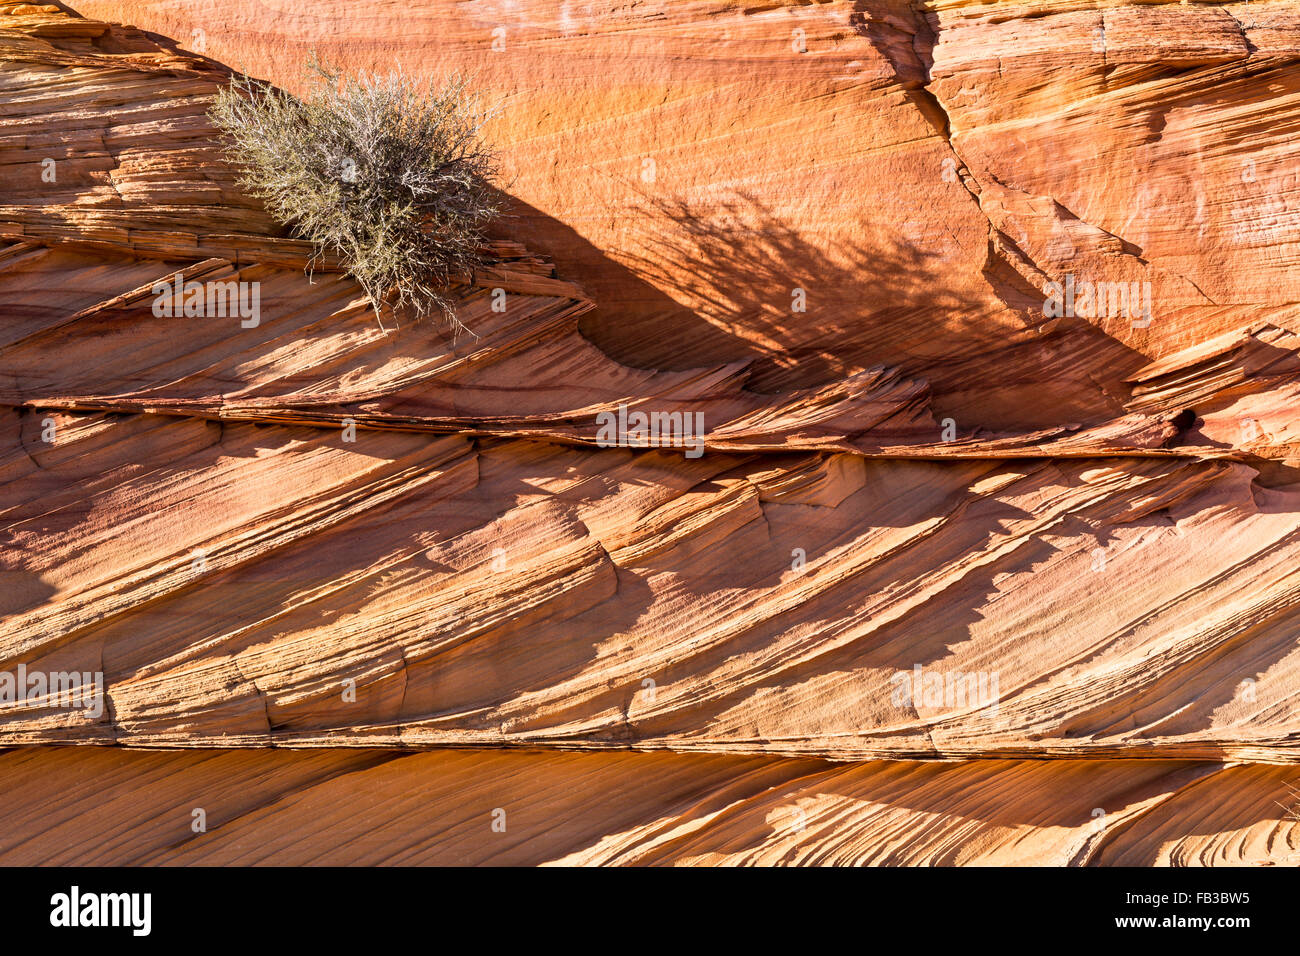 Un arbusto si aggrappa a strati di collisione di strati di roccia nel sud Coyote Buttes regione, Vermillion Cliffs National Monument, AZ Foto Stock